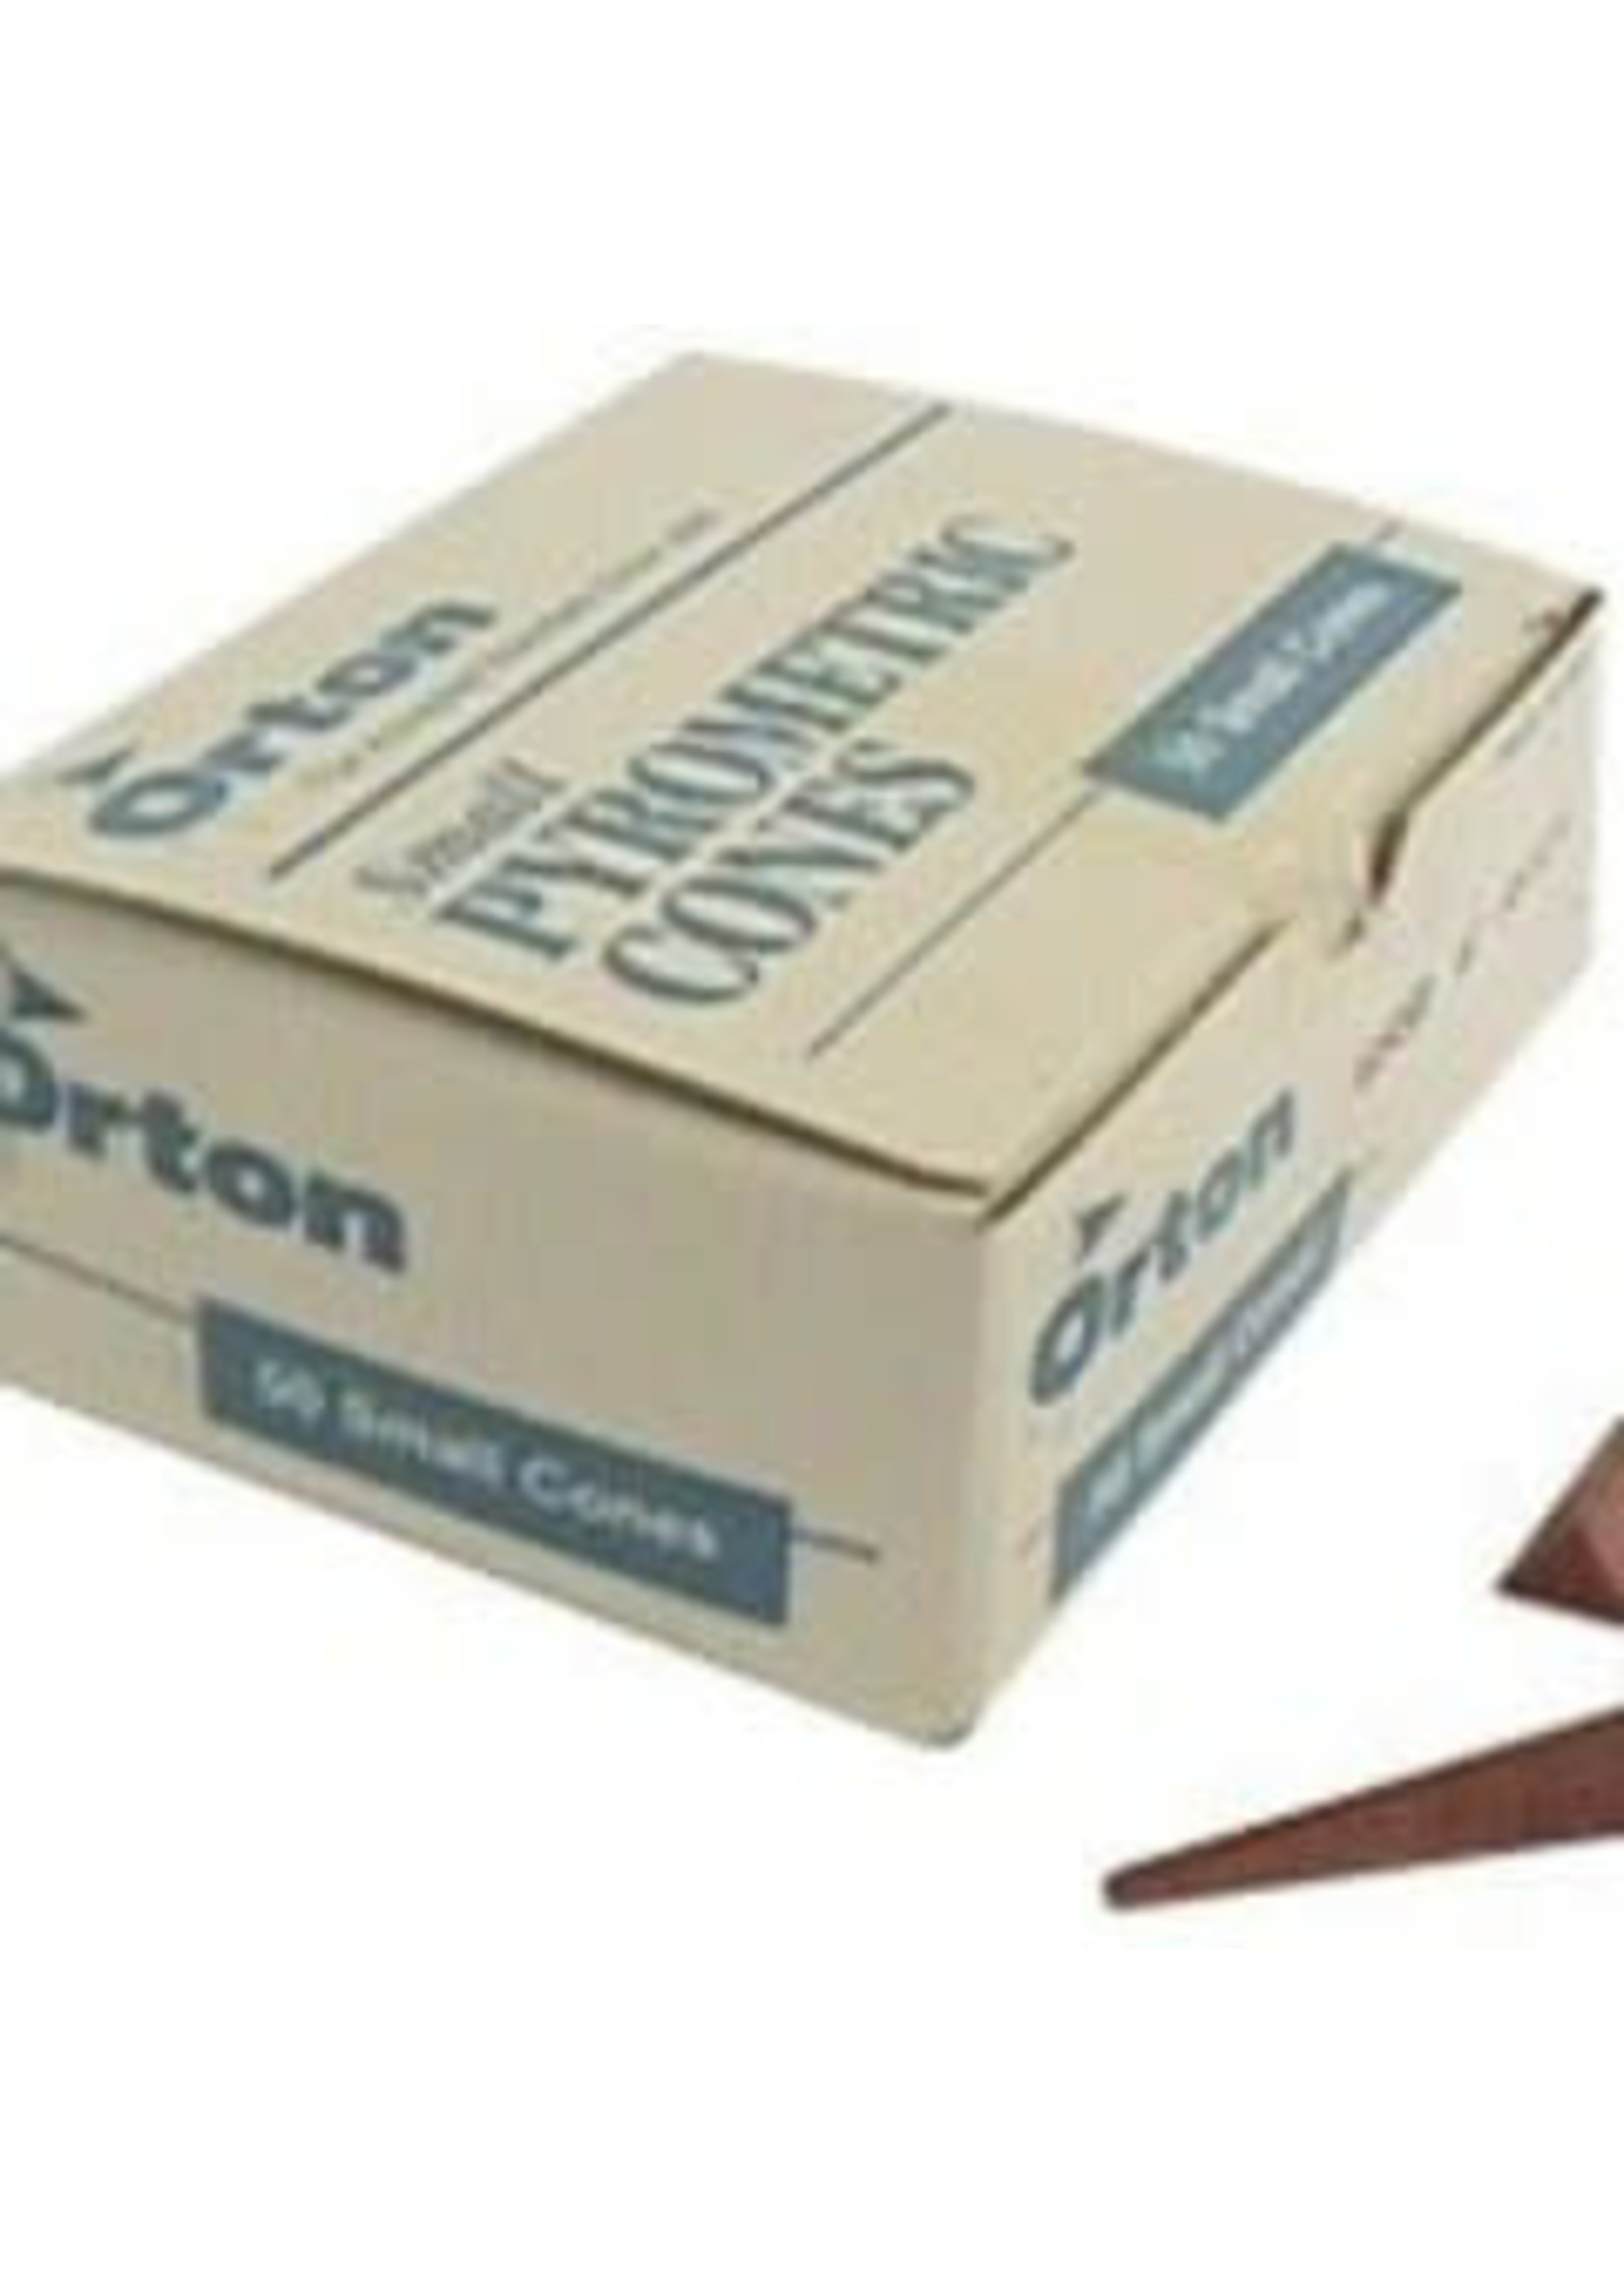 Orton small cone 019 (x50)